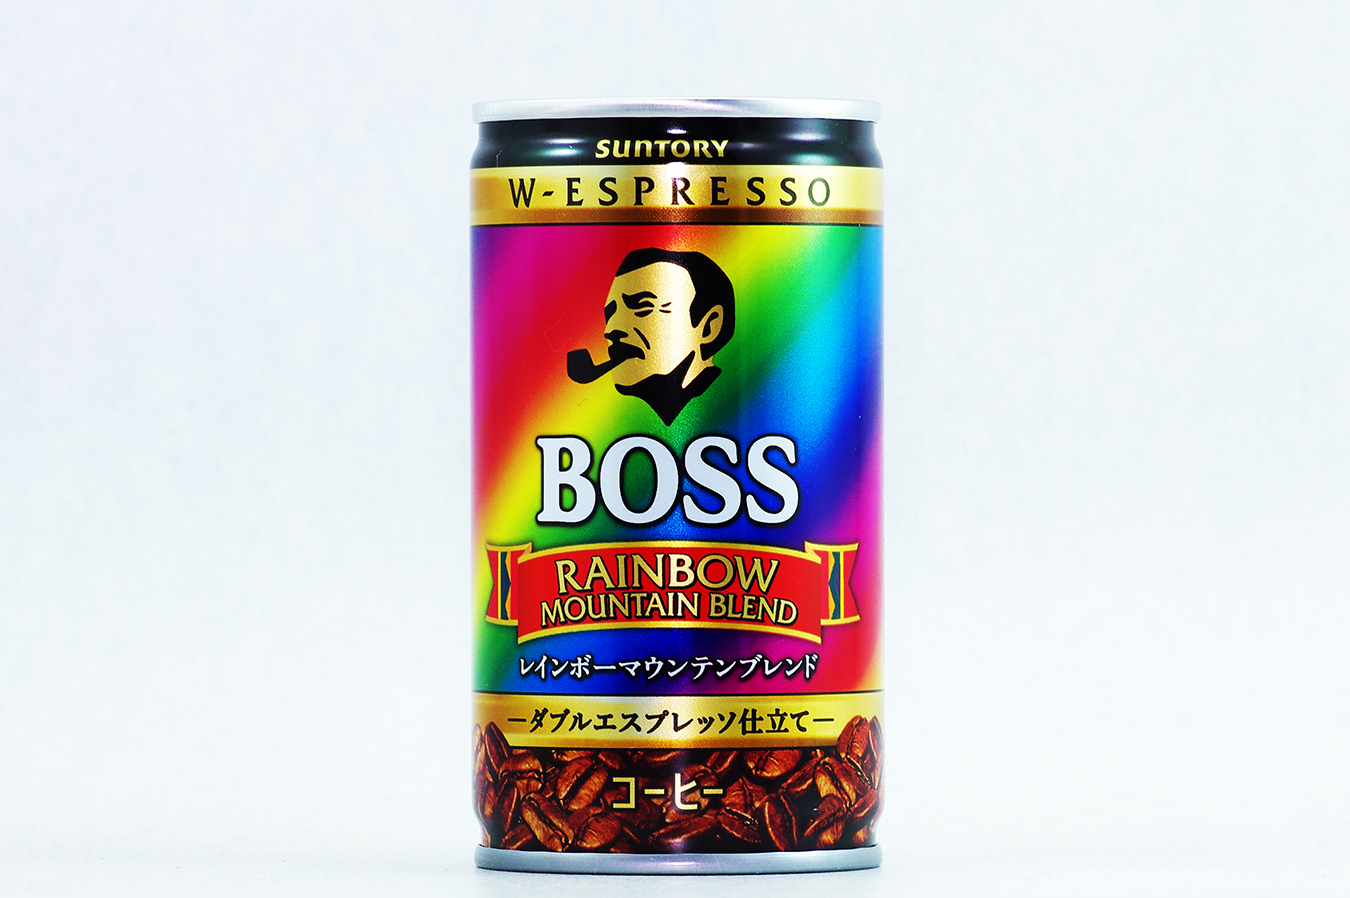 BOSS レインボーマウンテンブレンド 165g缶 2017年6月